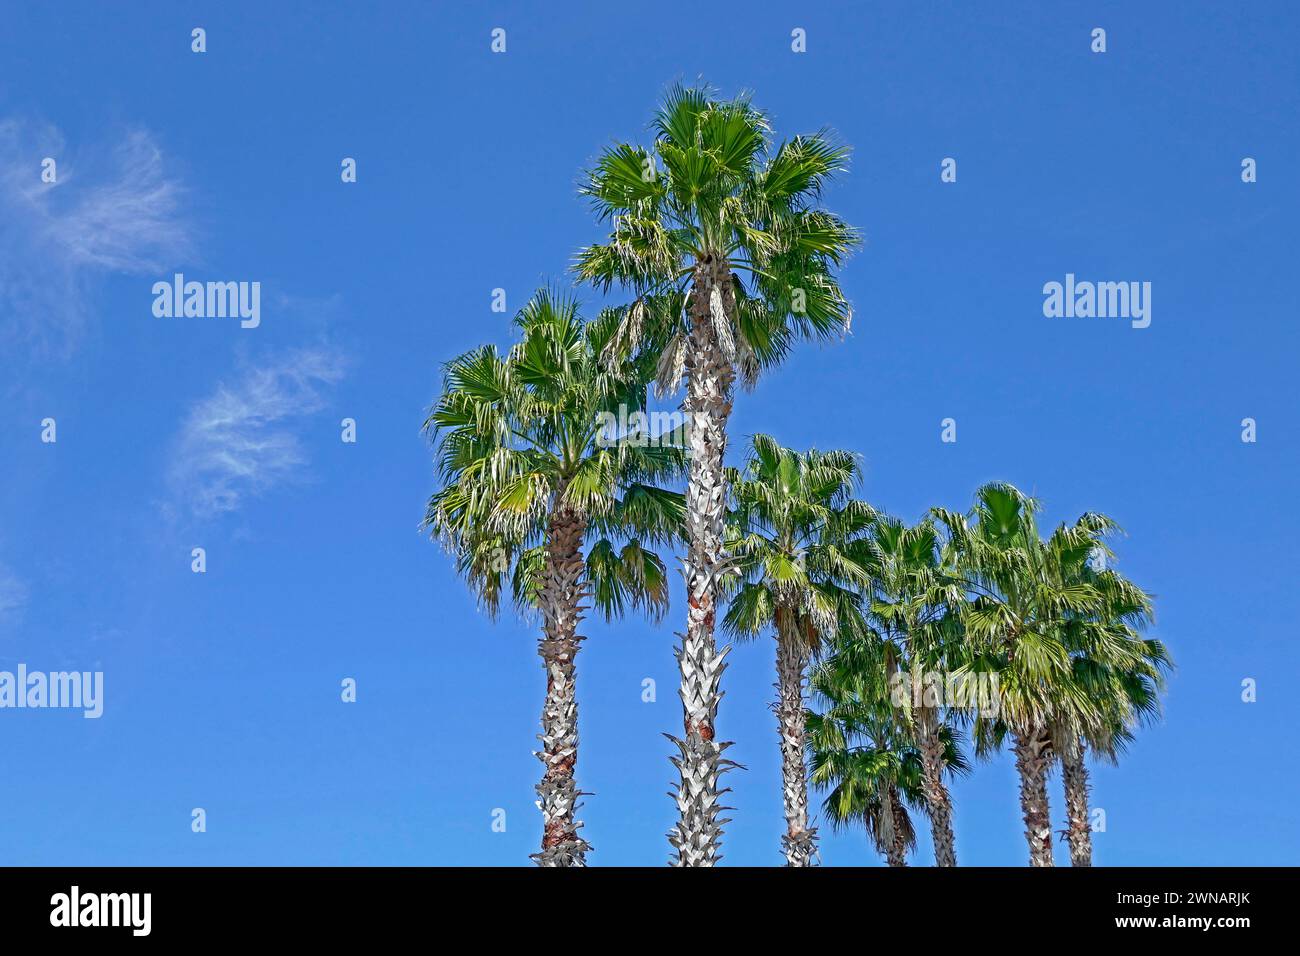 Sabal Palmetto o Sabal Palm, o Cabbage Palm...Arecaceae (Palmae)...palma perenne e sempreverde, originaria della Florida, qui utilizzata per il paesaggio in A. Foto Stock